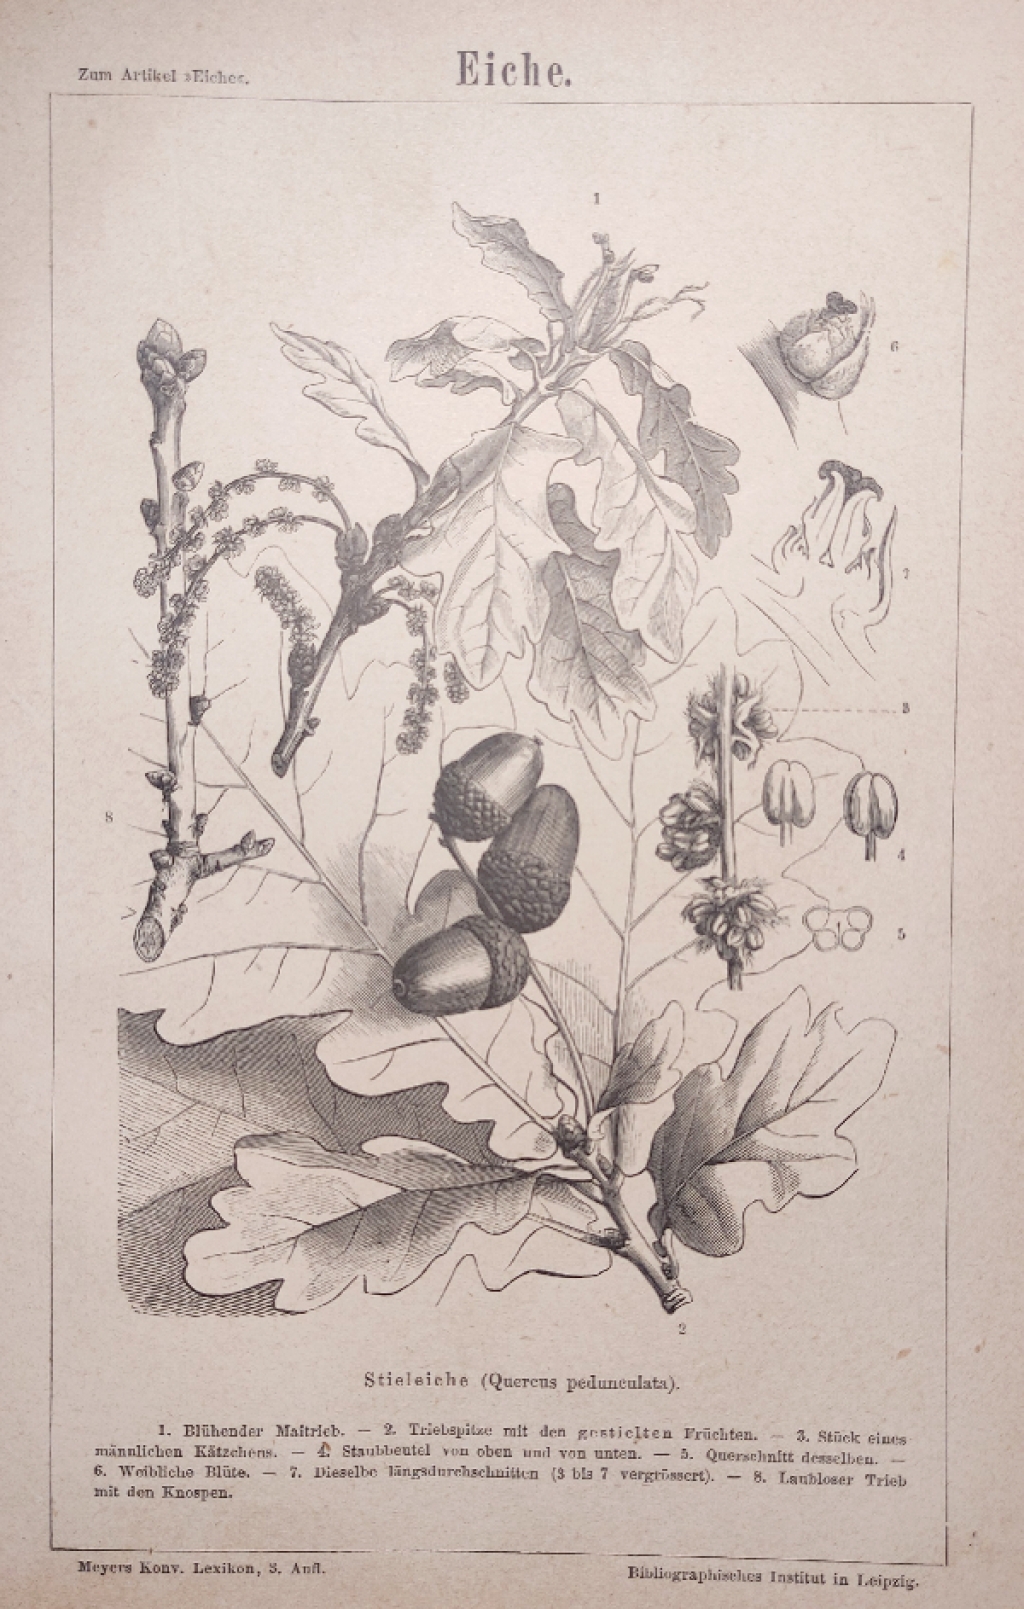 [rycina, 1875] Eiche. Stieleiche (Quercus pedunculata). [Dąb]